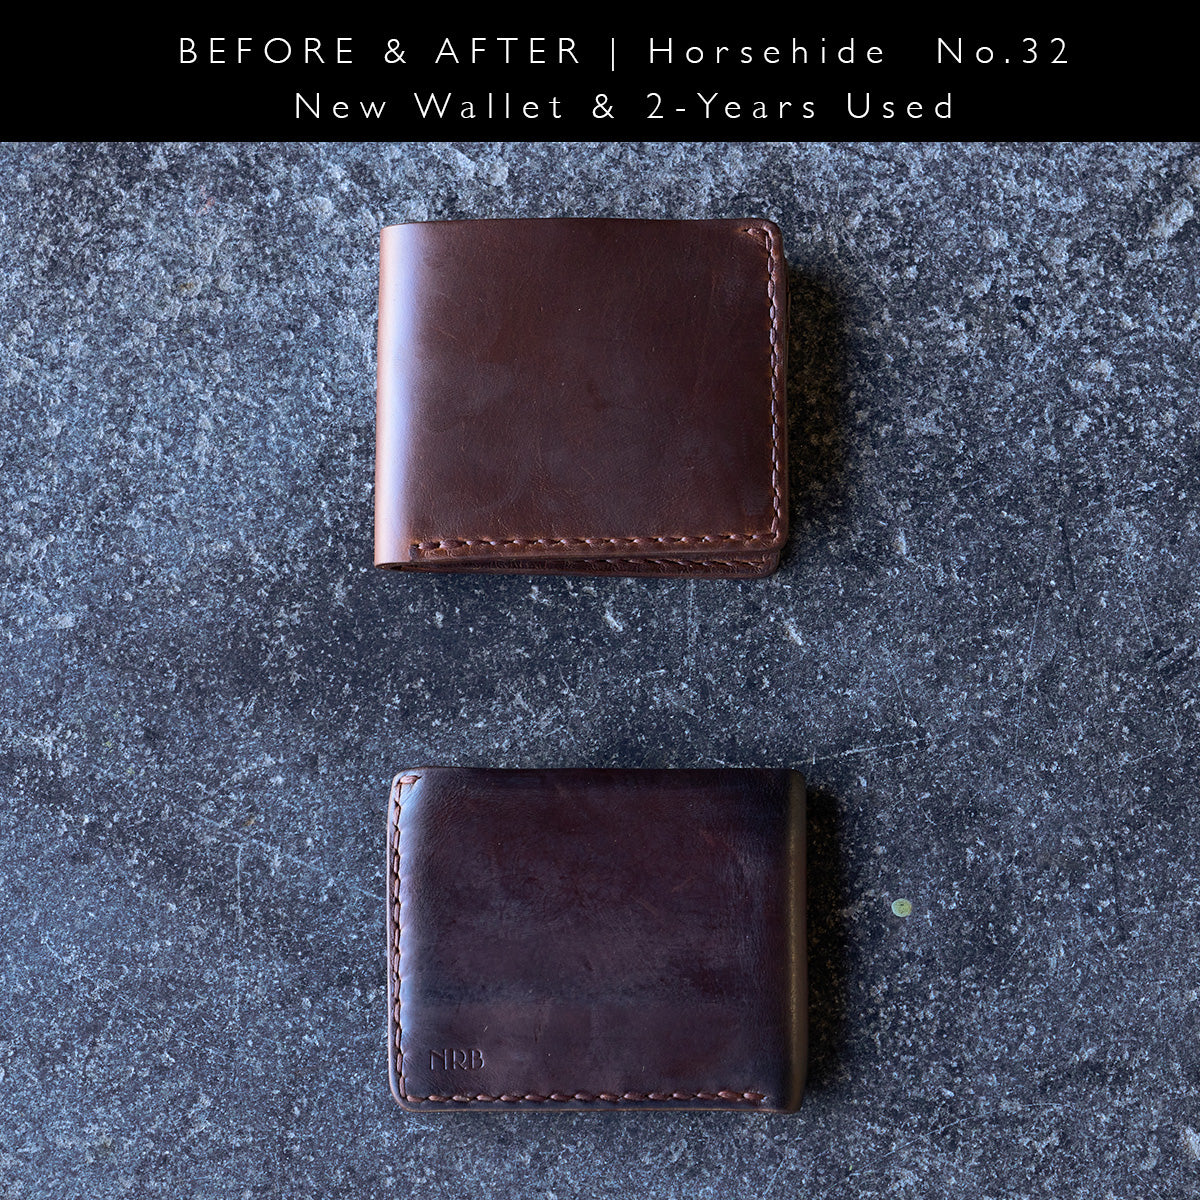 CXL Horsehide Wallet #32 — Coronado Leather